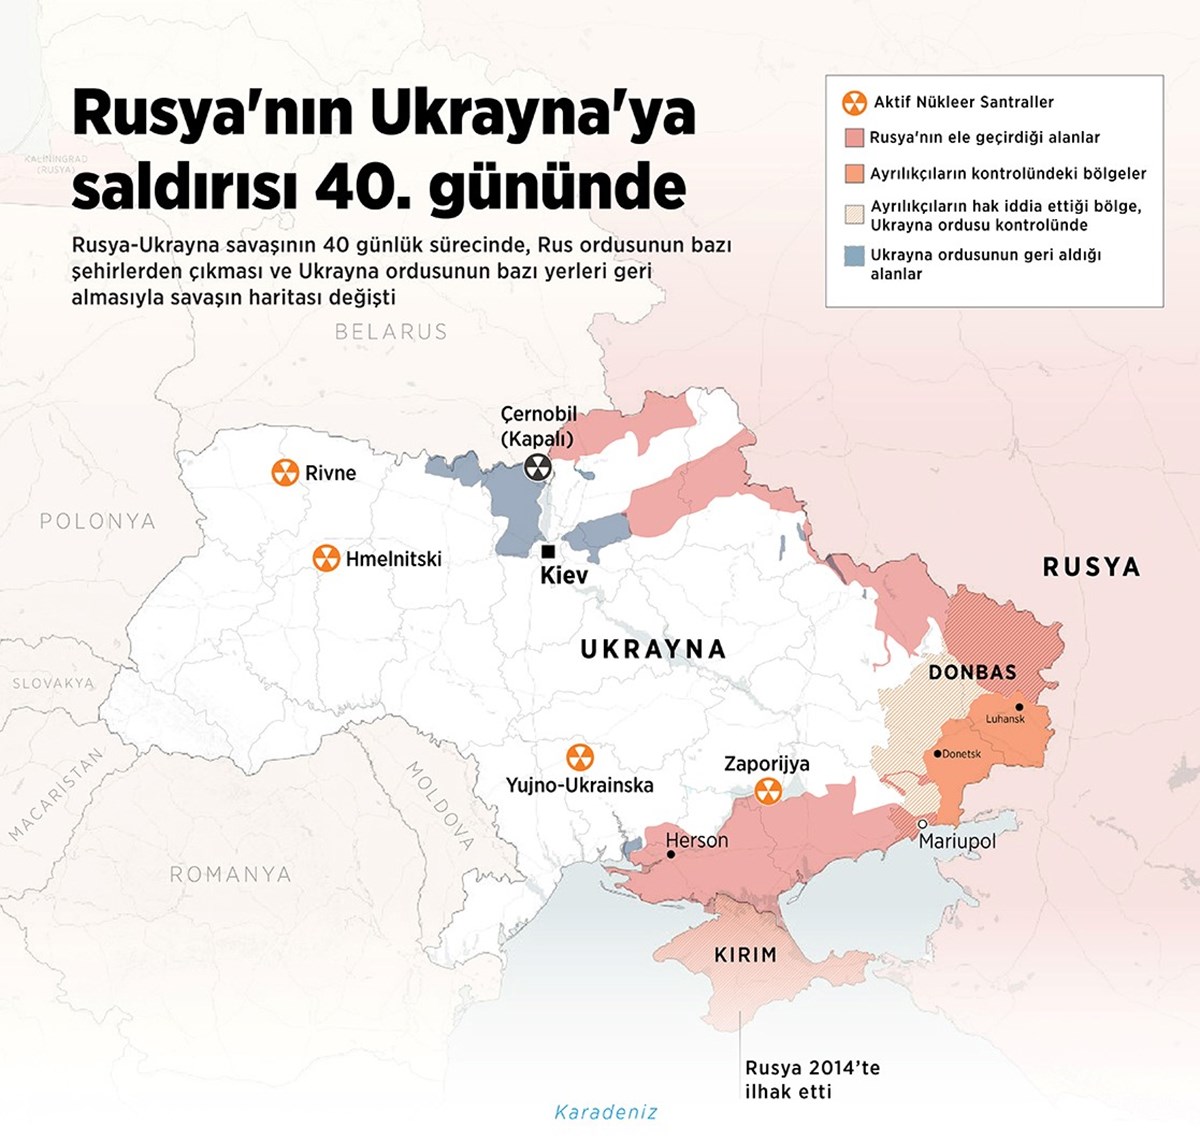 Ukrayna-Rusya savaşı 40. gününde devam ediyor.